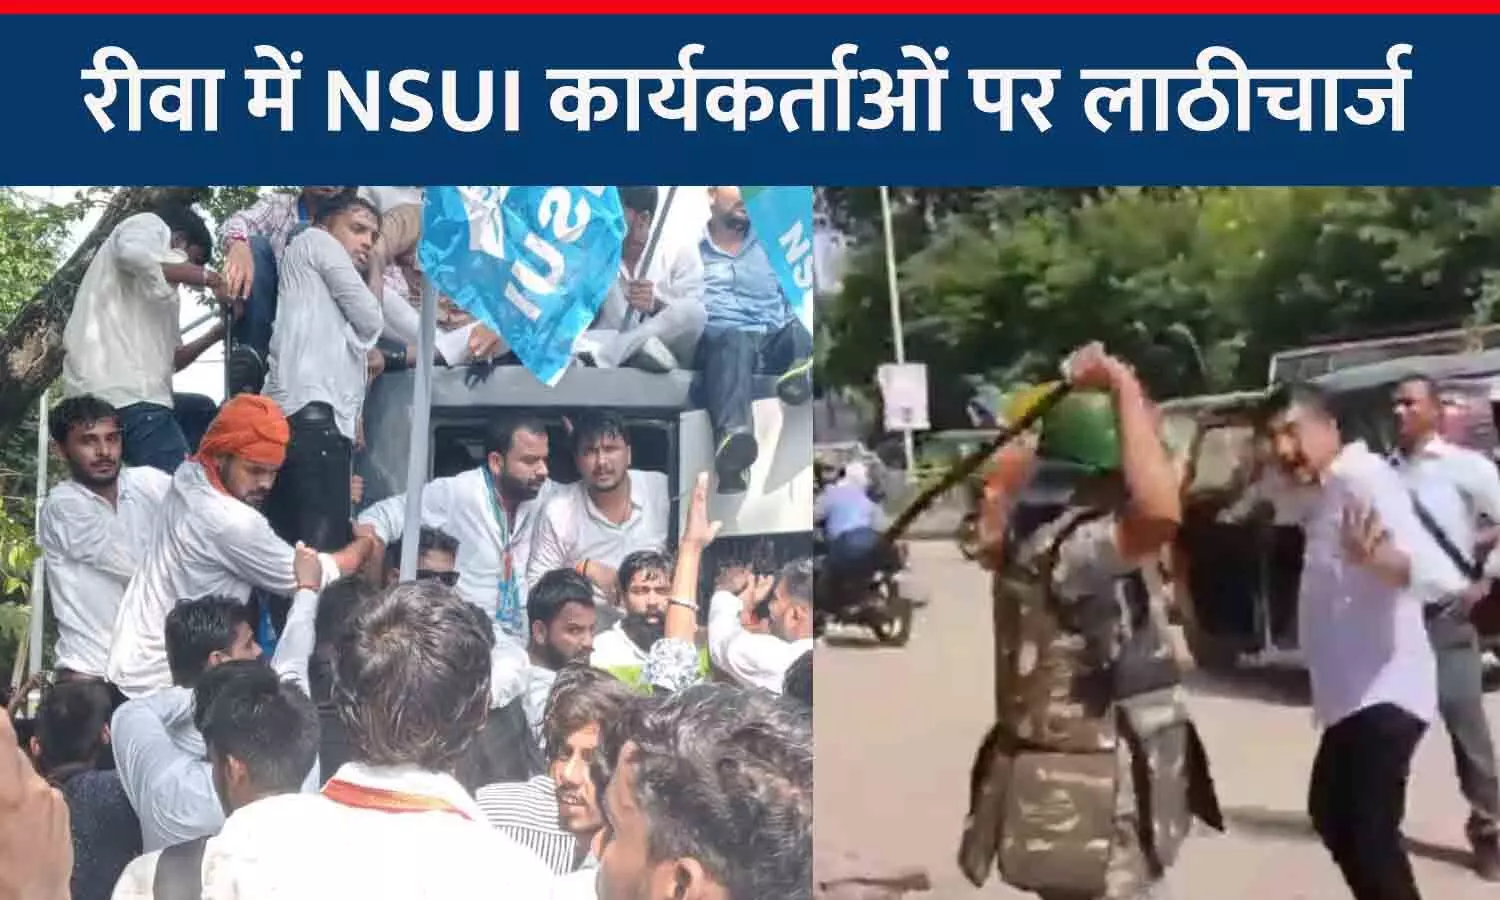 NSUI कार्यकर्ताओं पर लाठीचार्ज: रीवा कलेक्ट्रेट के सामने प्रदर्शन कर रहें छात्र नेताओं को पुलिस ने पीटा, वाटर कैनन से पानी छोड़ा, आधा सैकड़ा से ज्यादा गिरफ्तार